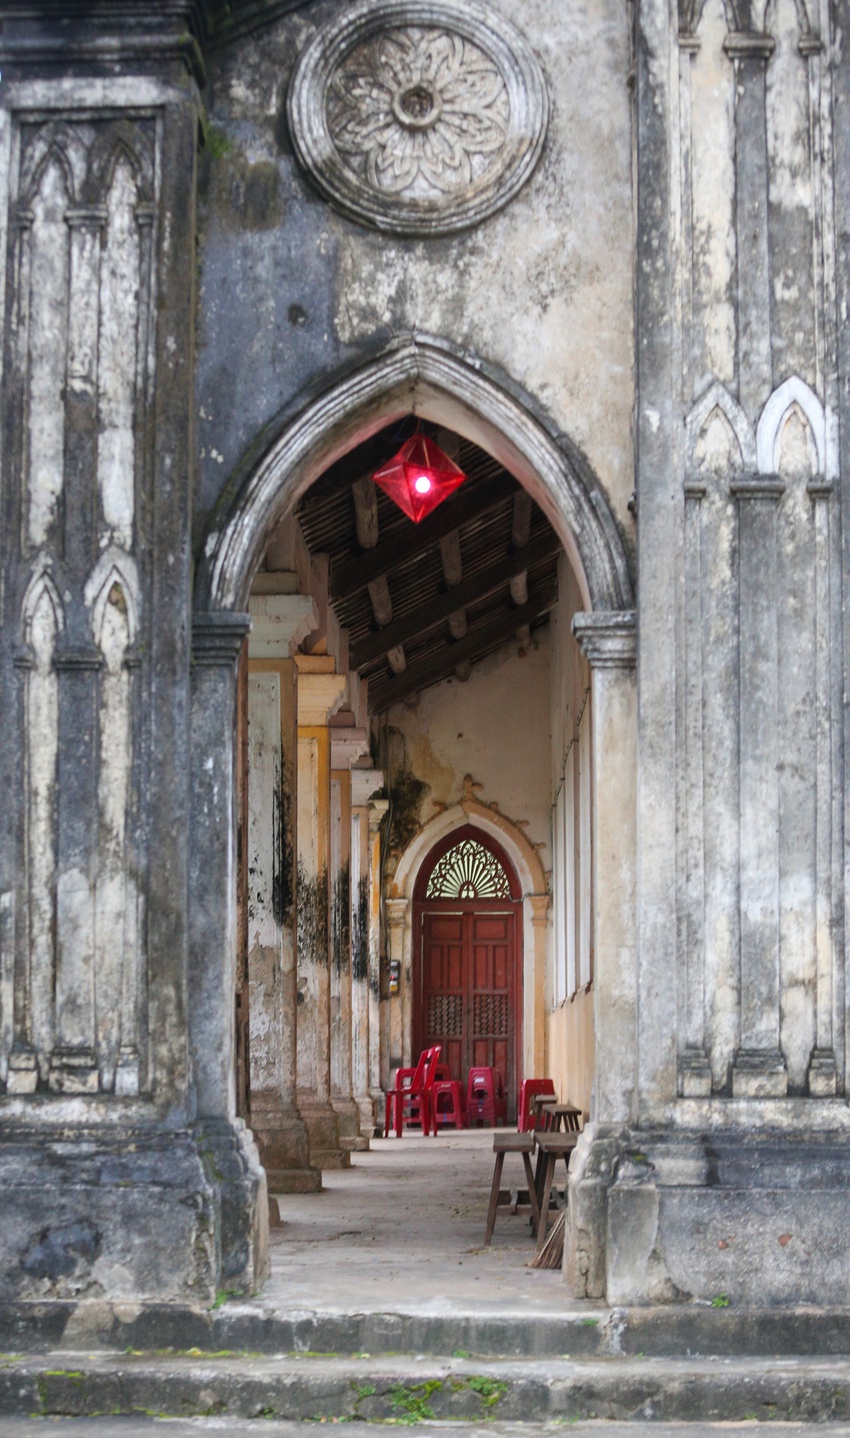 Vẻ đẹp của nhà thờ đá 120 tuổi xây bằng vỏ cây và dây tơ hồng ở Đà Nẵng - Ảnh 6.